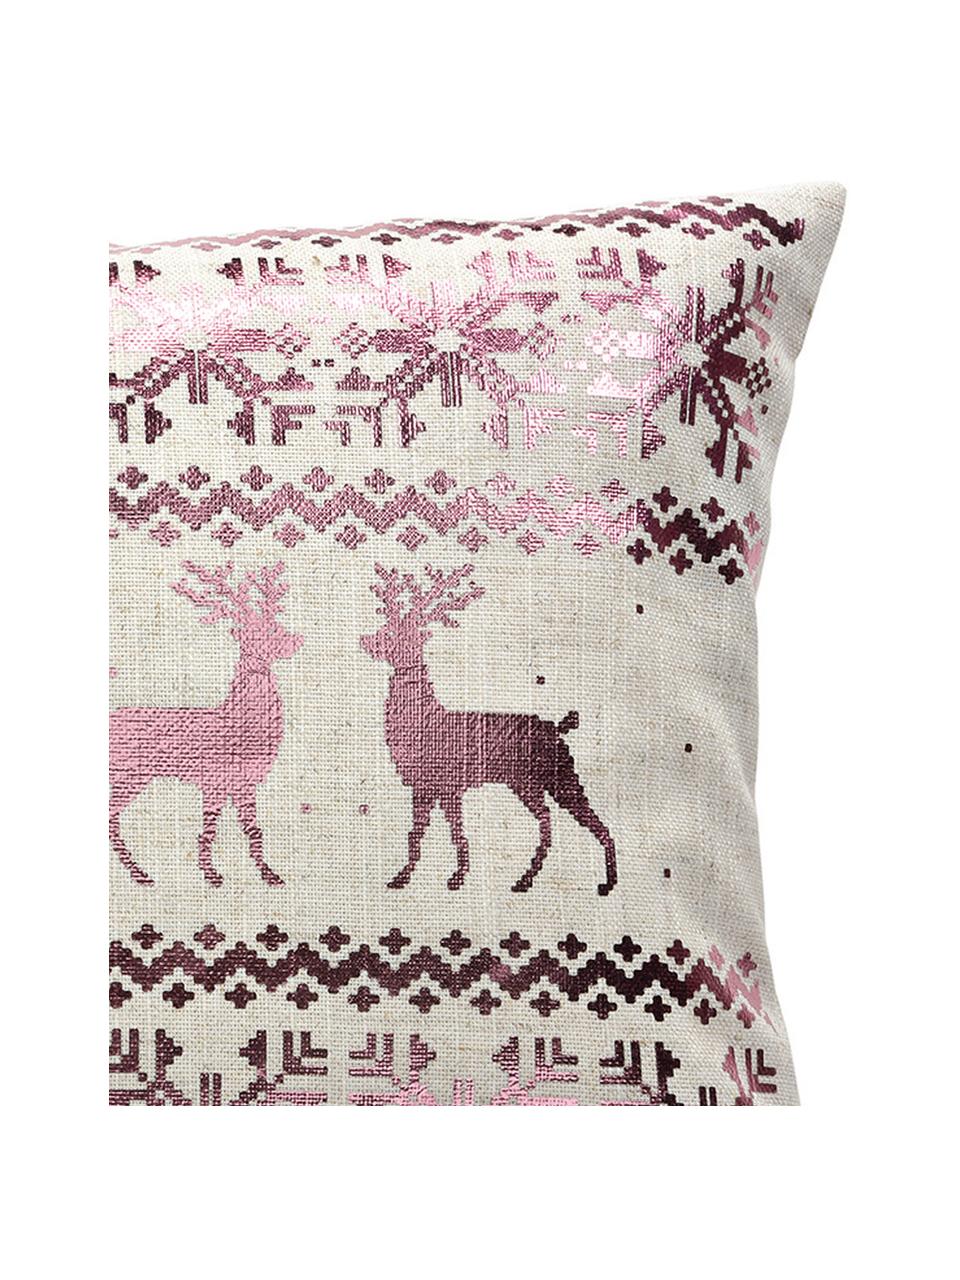 Kissenhülle Lodge mit glänzendem winterlichem Muster, 95% Polyester, 5% Leinen, Pink, Beige, 30 x 50 cm